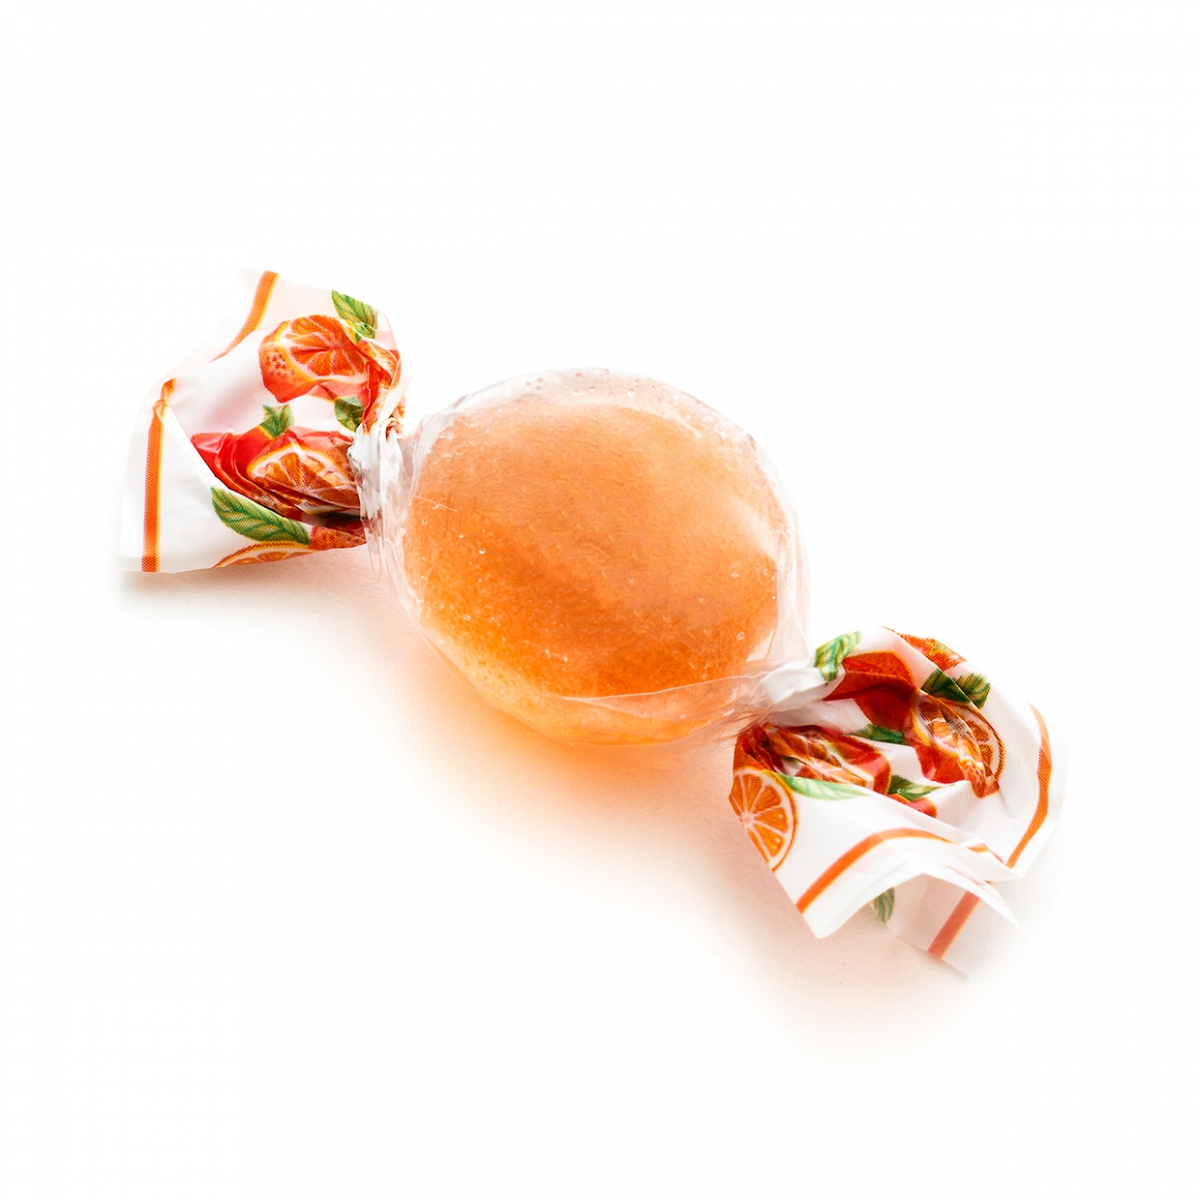 Imagen en la que se ve un caramelo de color naranja envuelto en plástico transparente